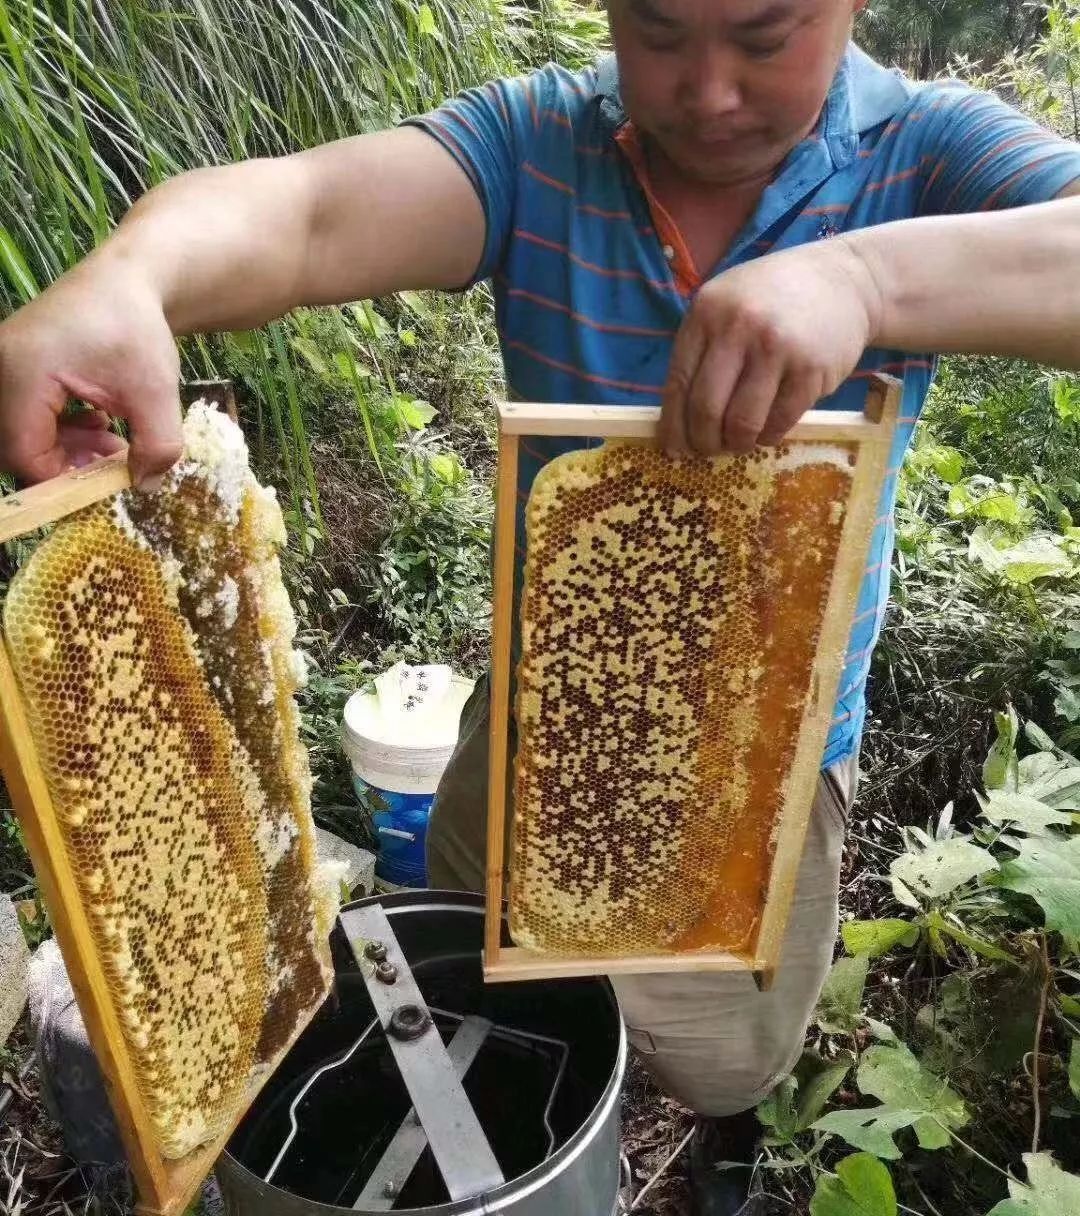 据了解,为让广大消费者购买到放心的,新鲜的土蜂蜜,川河盖土蜂养殖